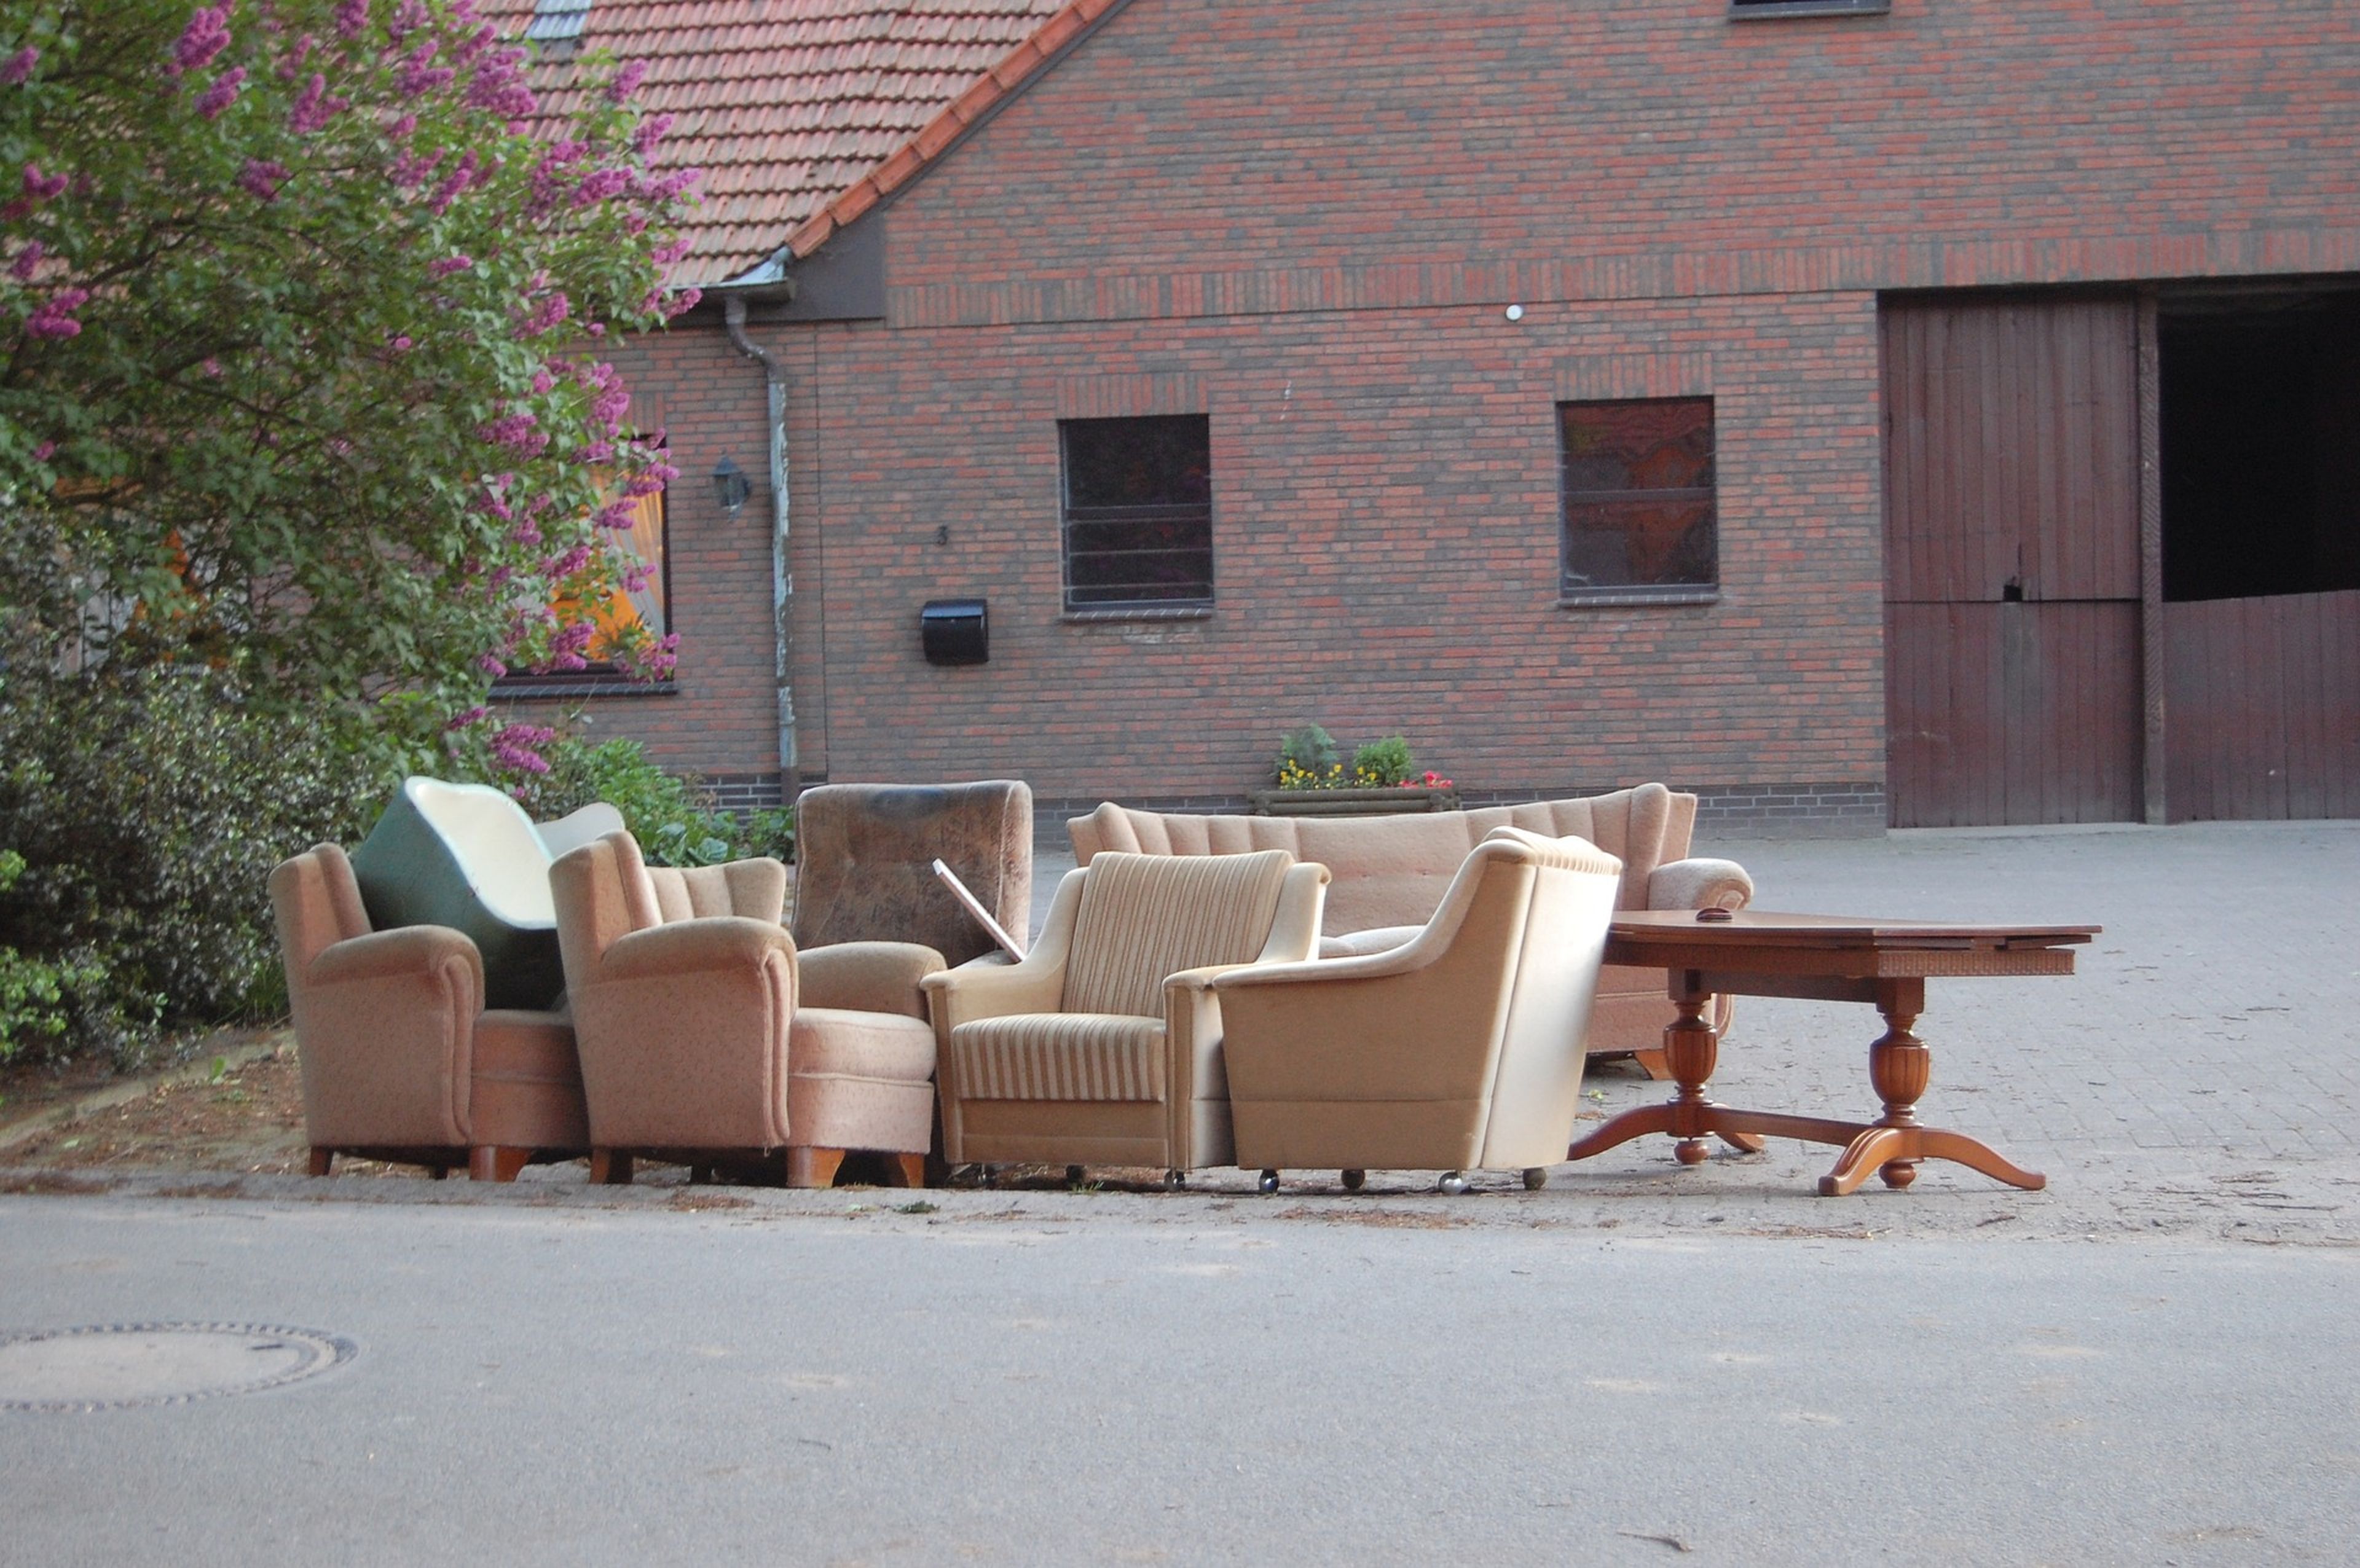 Muebles usados en la calle